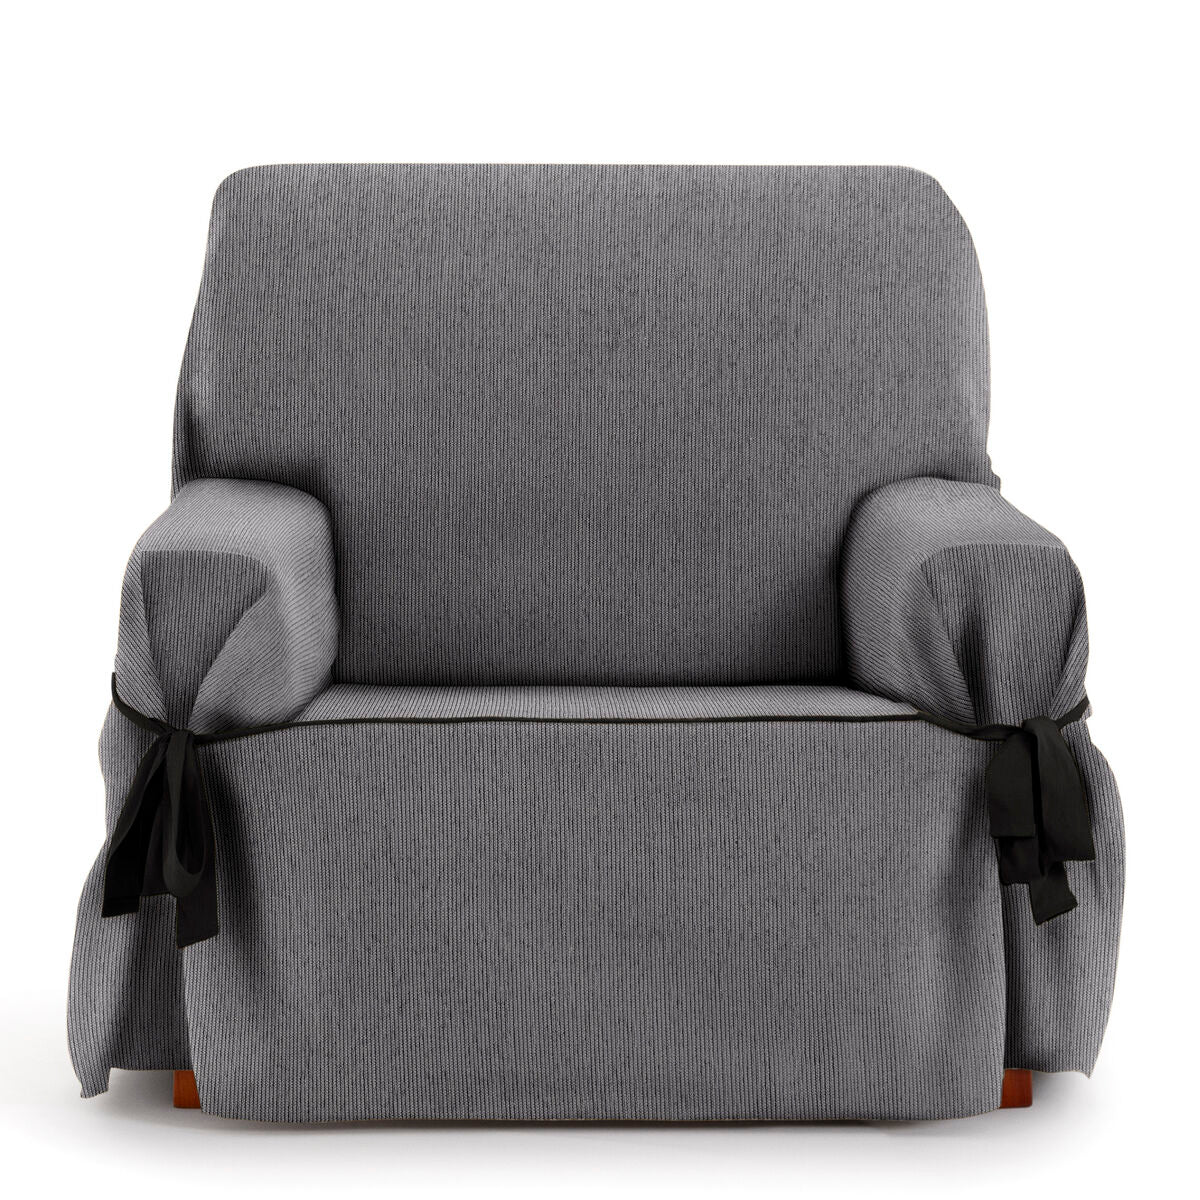 Copertina di divano gray Mid -Gray Eysa 100 x 110 x 120 cm